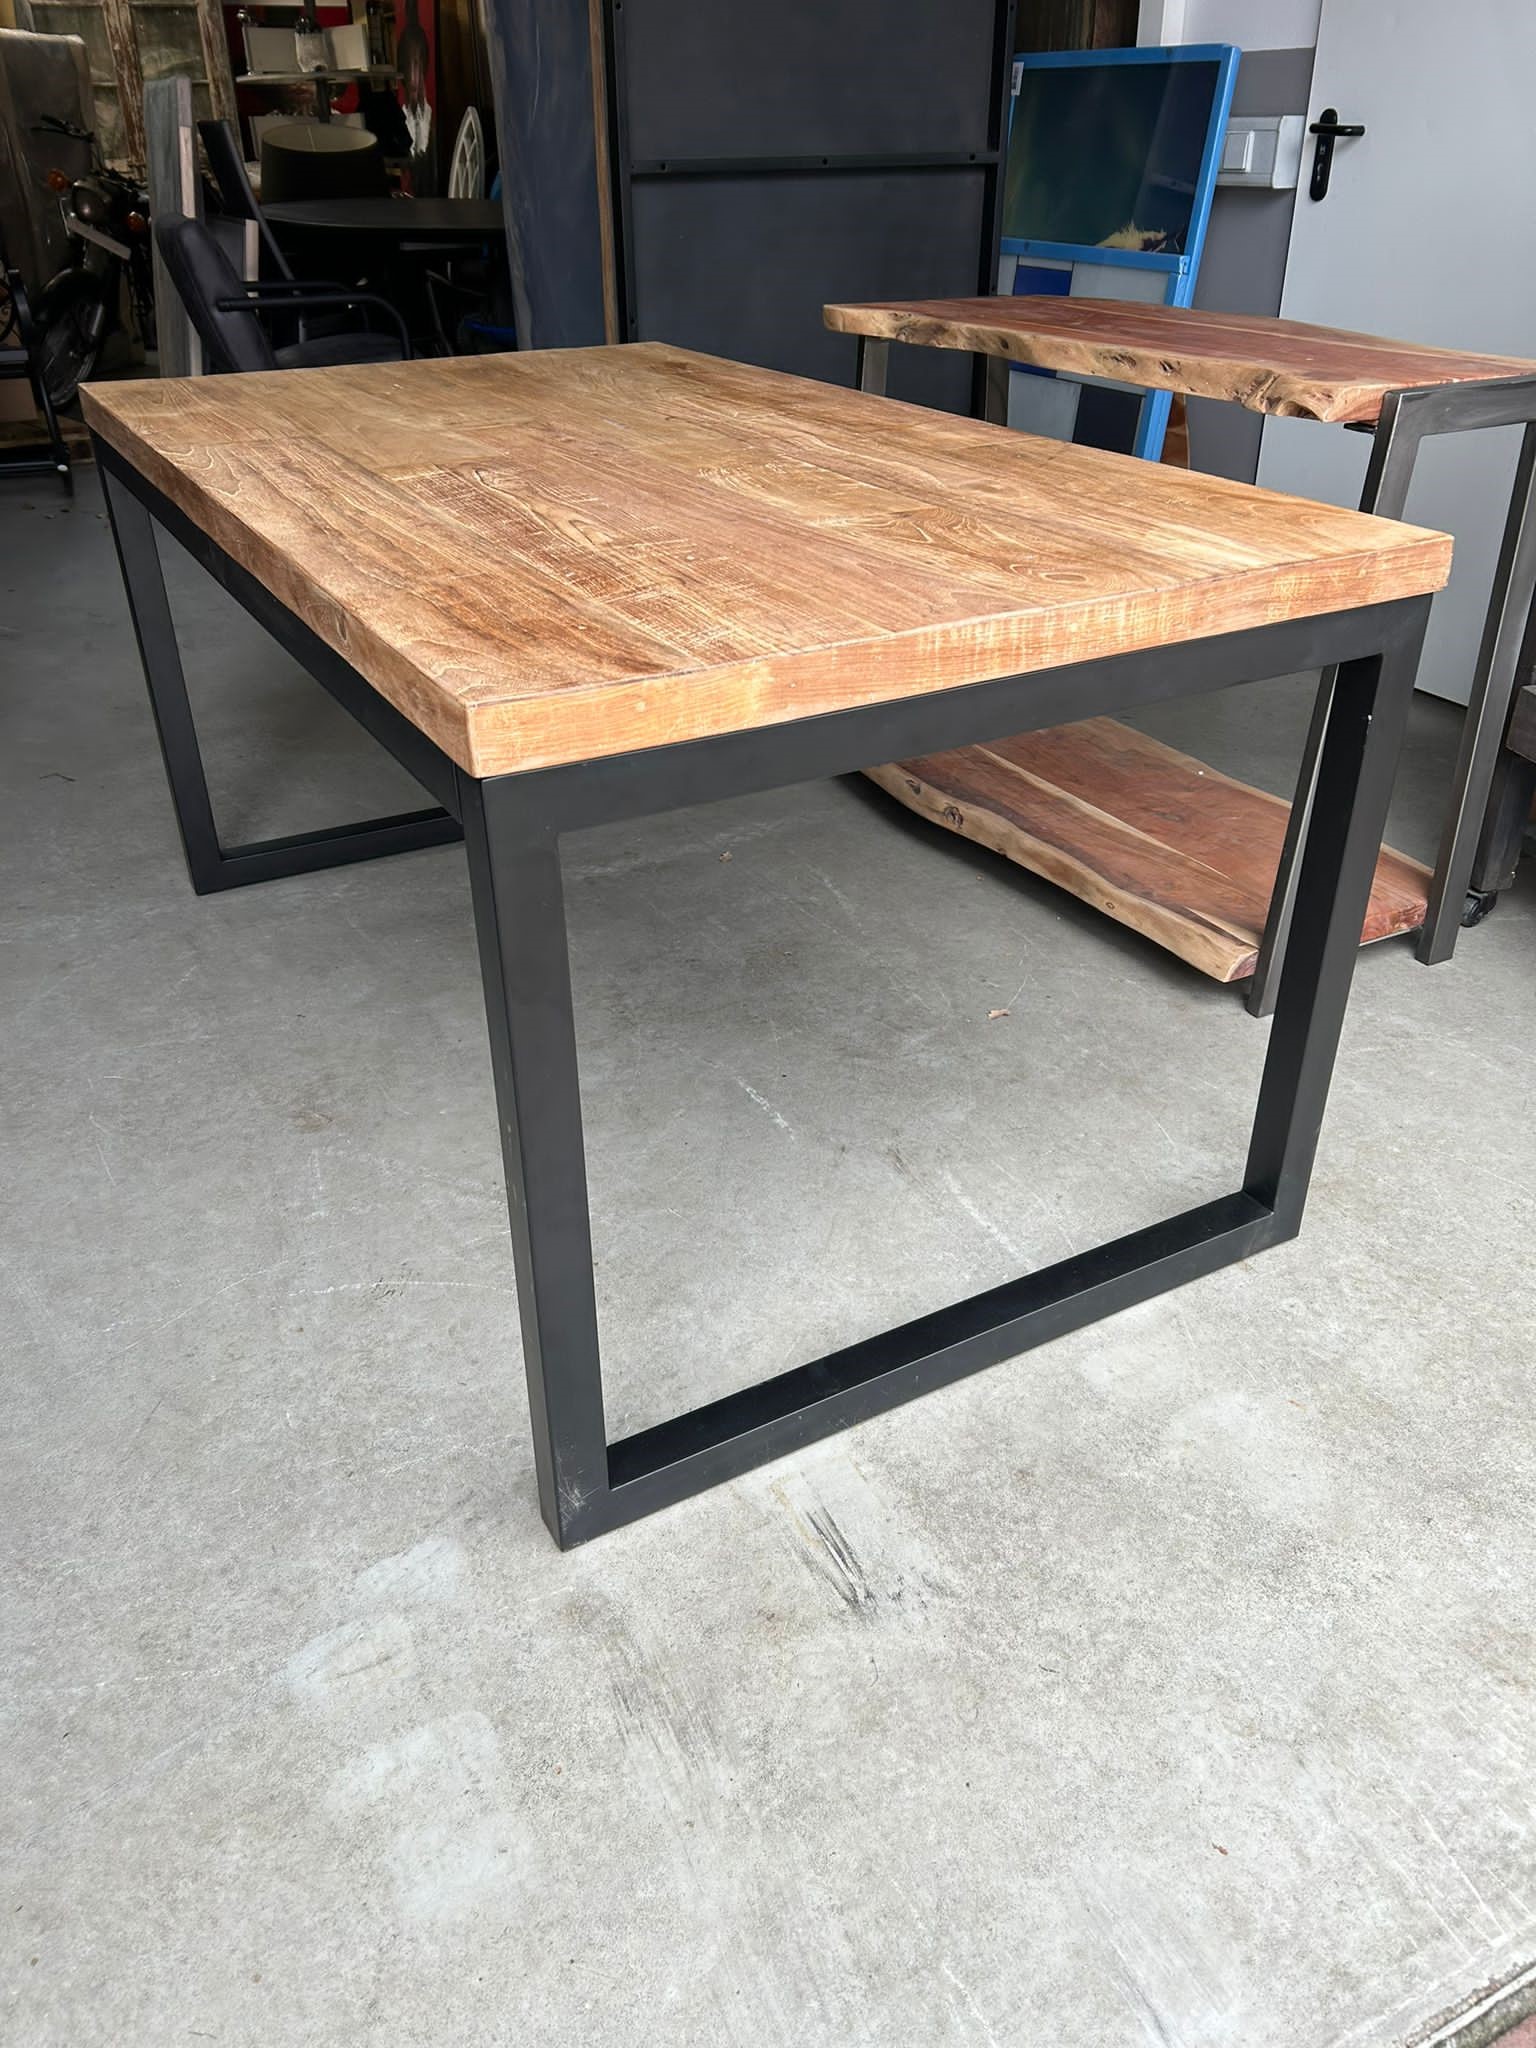 Industrial table - wood - black metal frame  - 160 x 90 cm